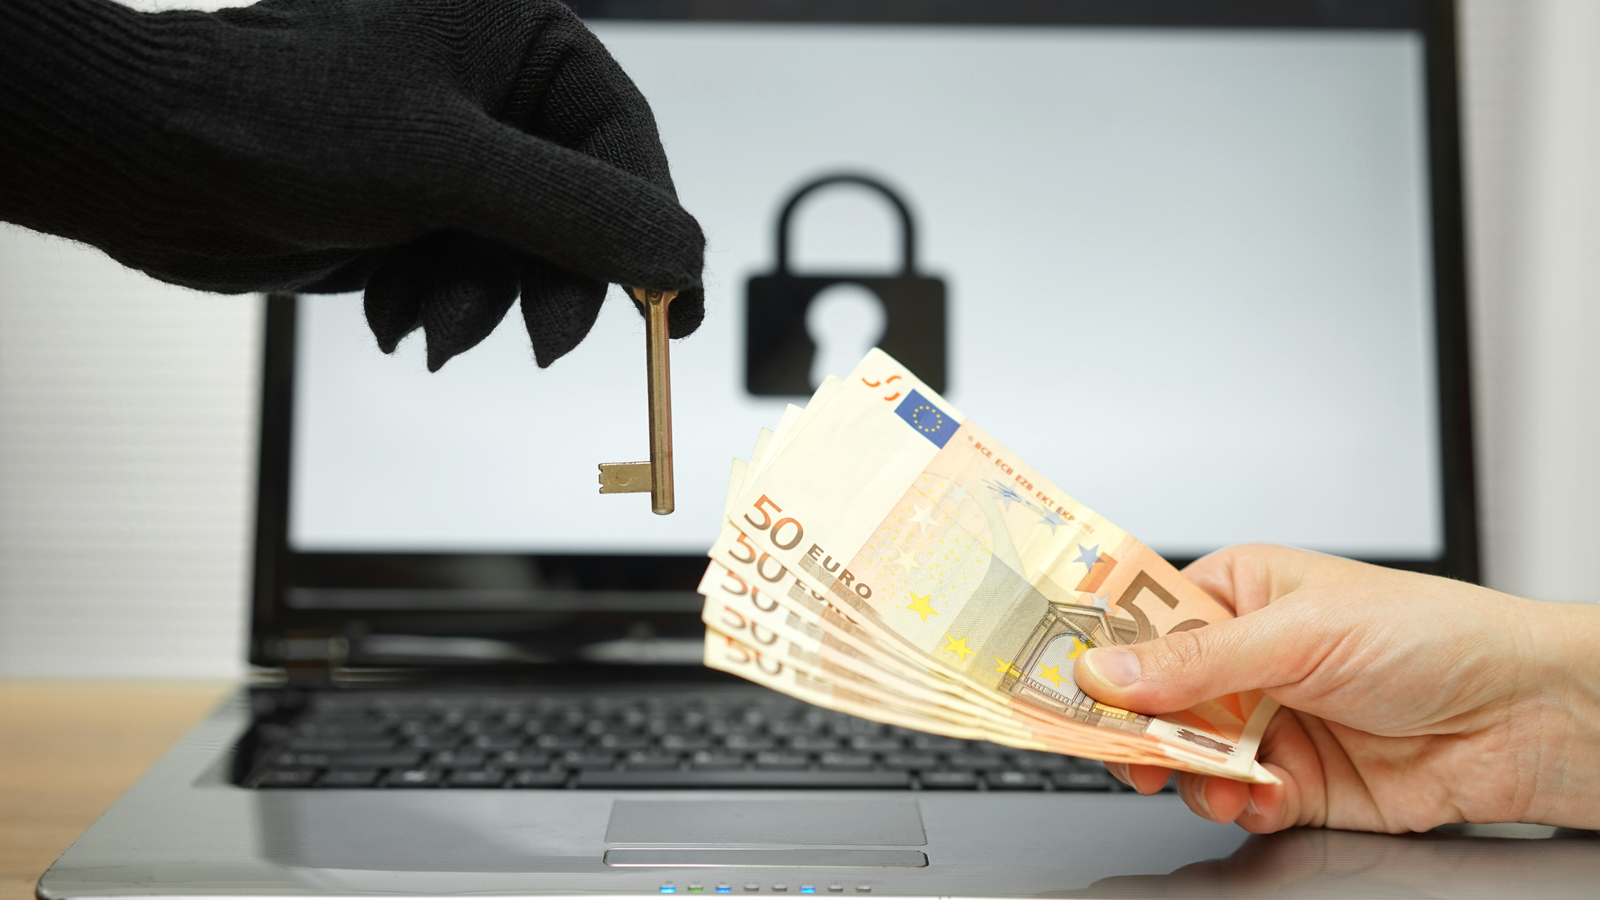 Une étude révèle que 78 % des victimes de ransomwares se font attaquer après avoir payé les hackers